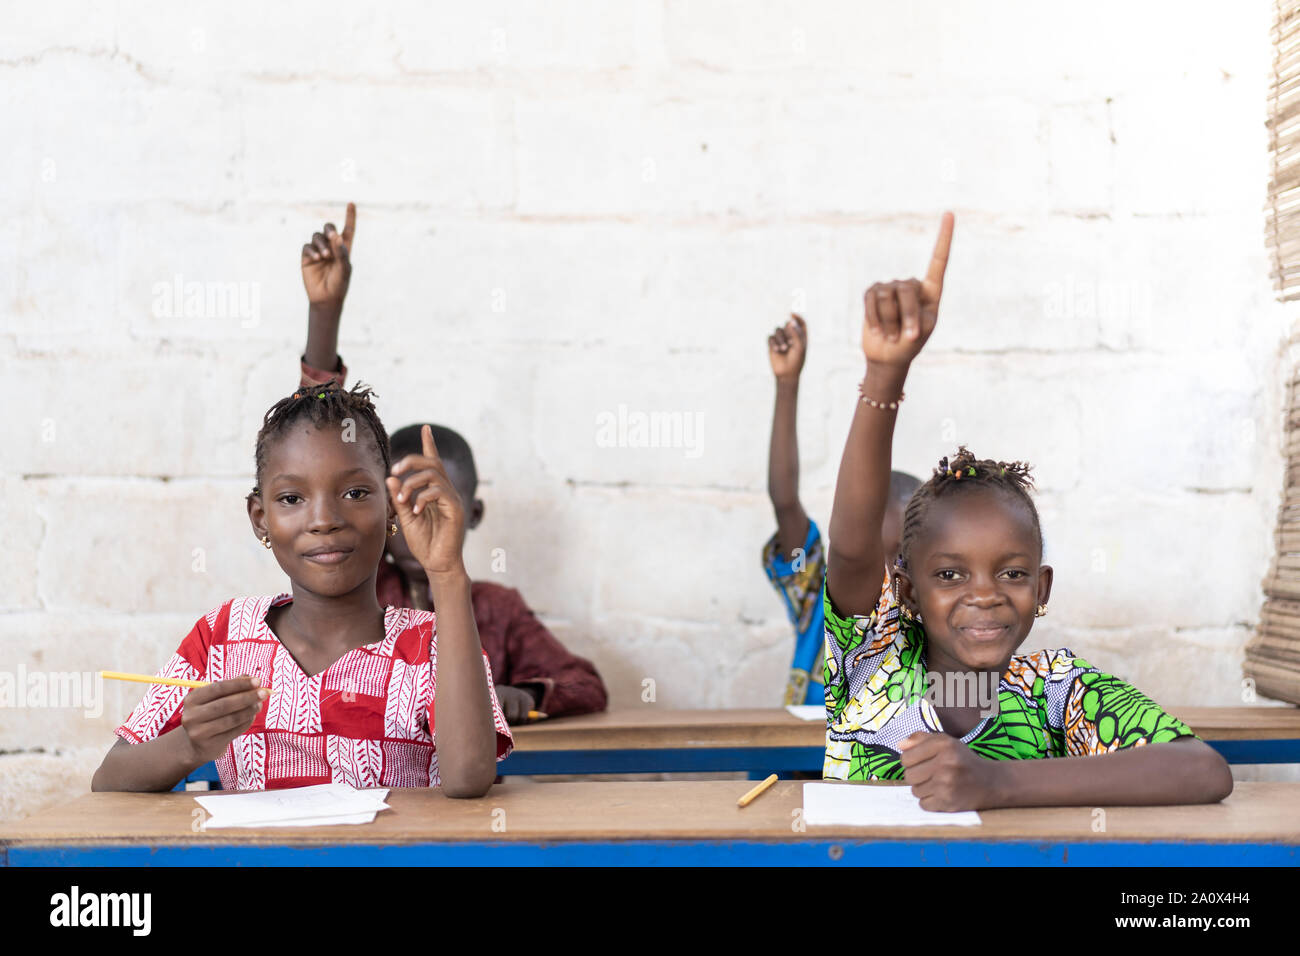 Schöne afrikanische Kinder Lächeln und Lachen in der Schule Drinnen Stockfoto